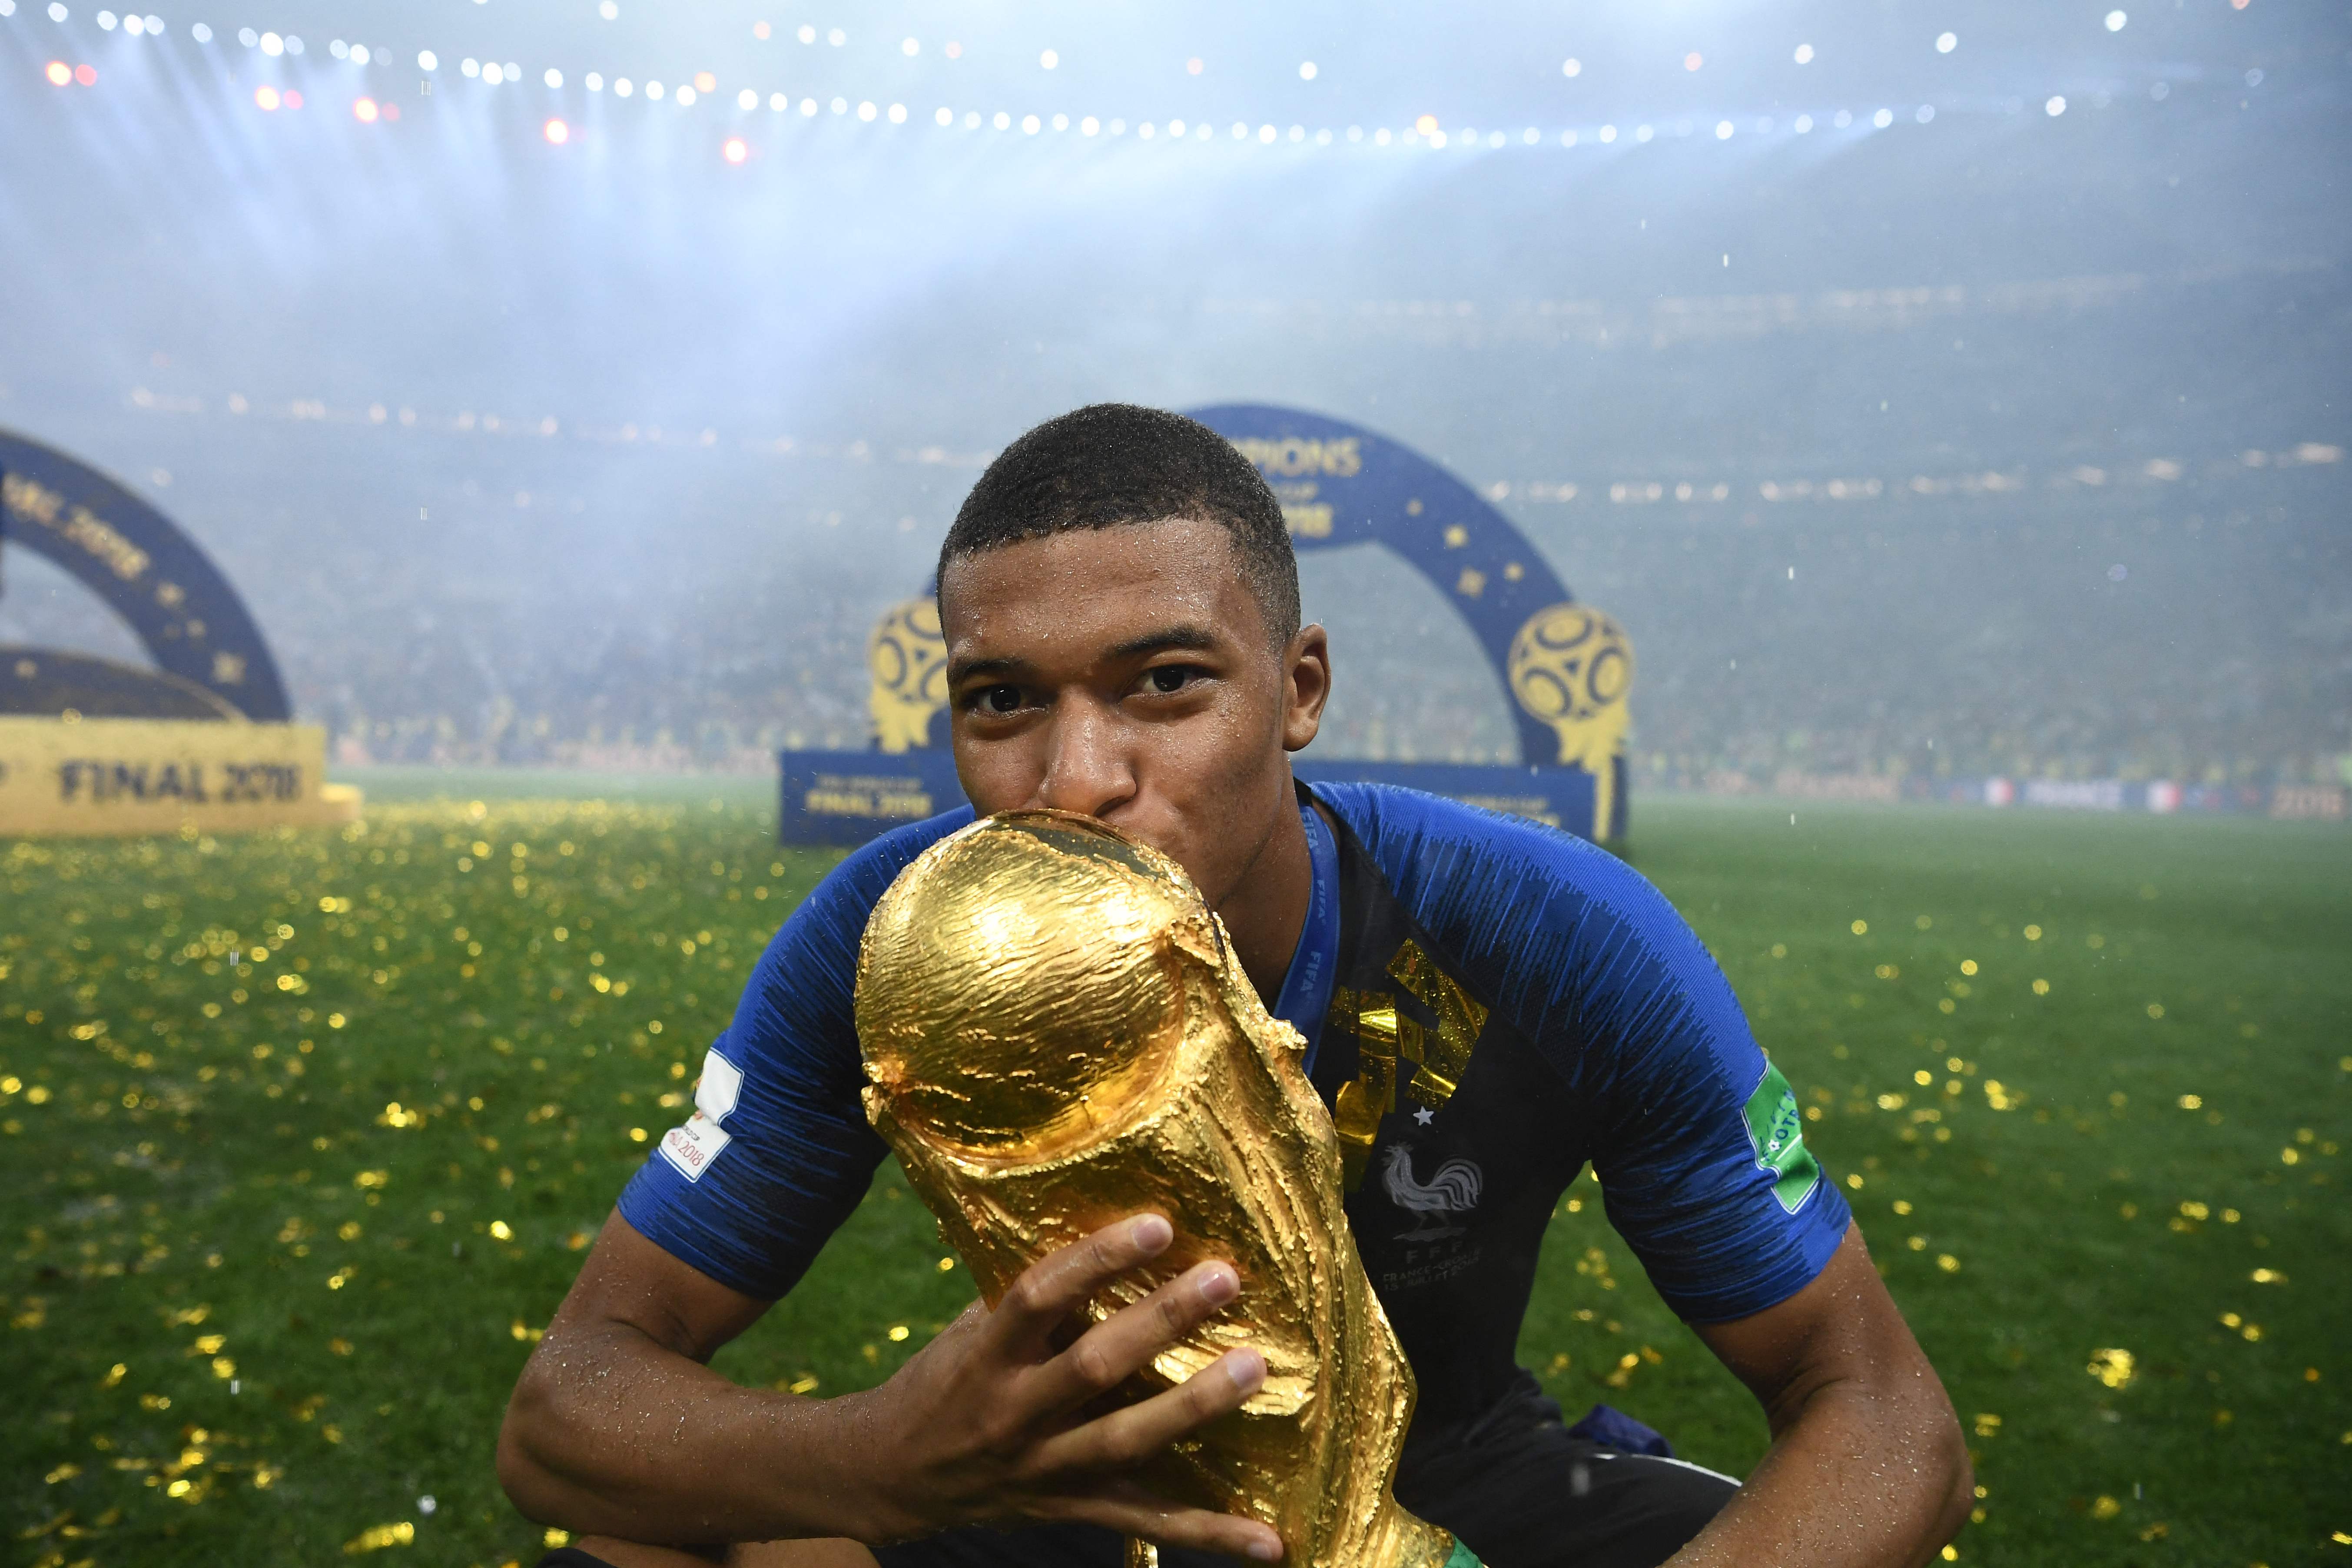 Coupe du Monde de football : le trophée est à Paris, et vous